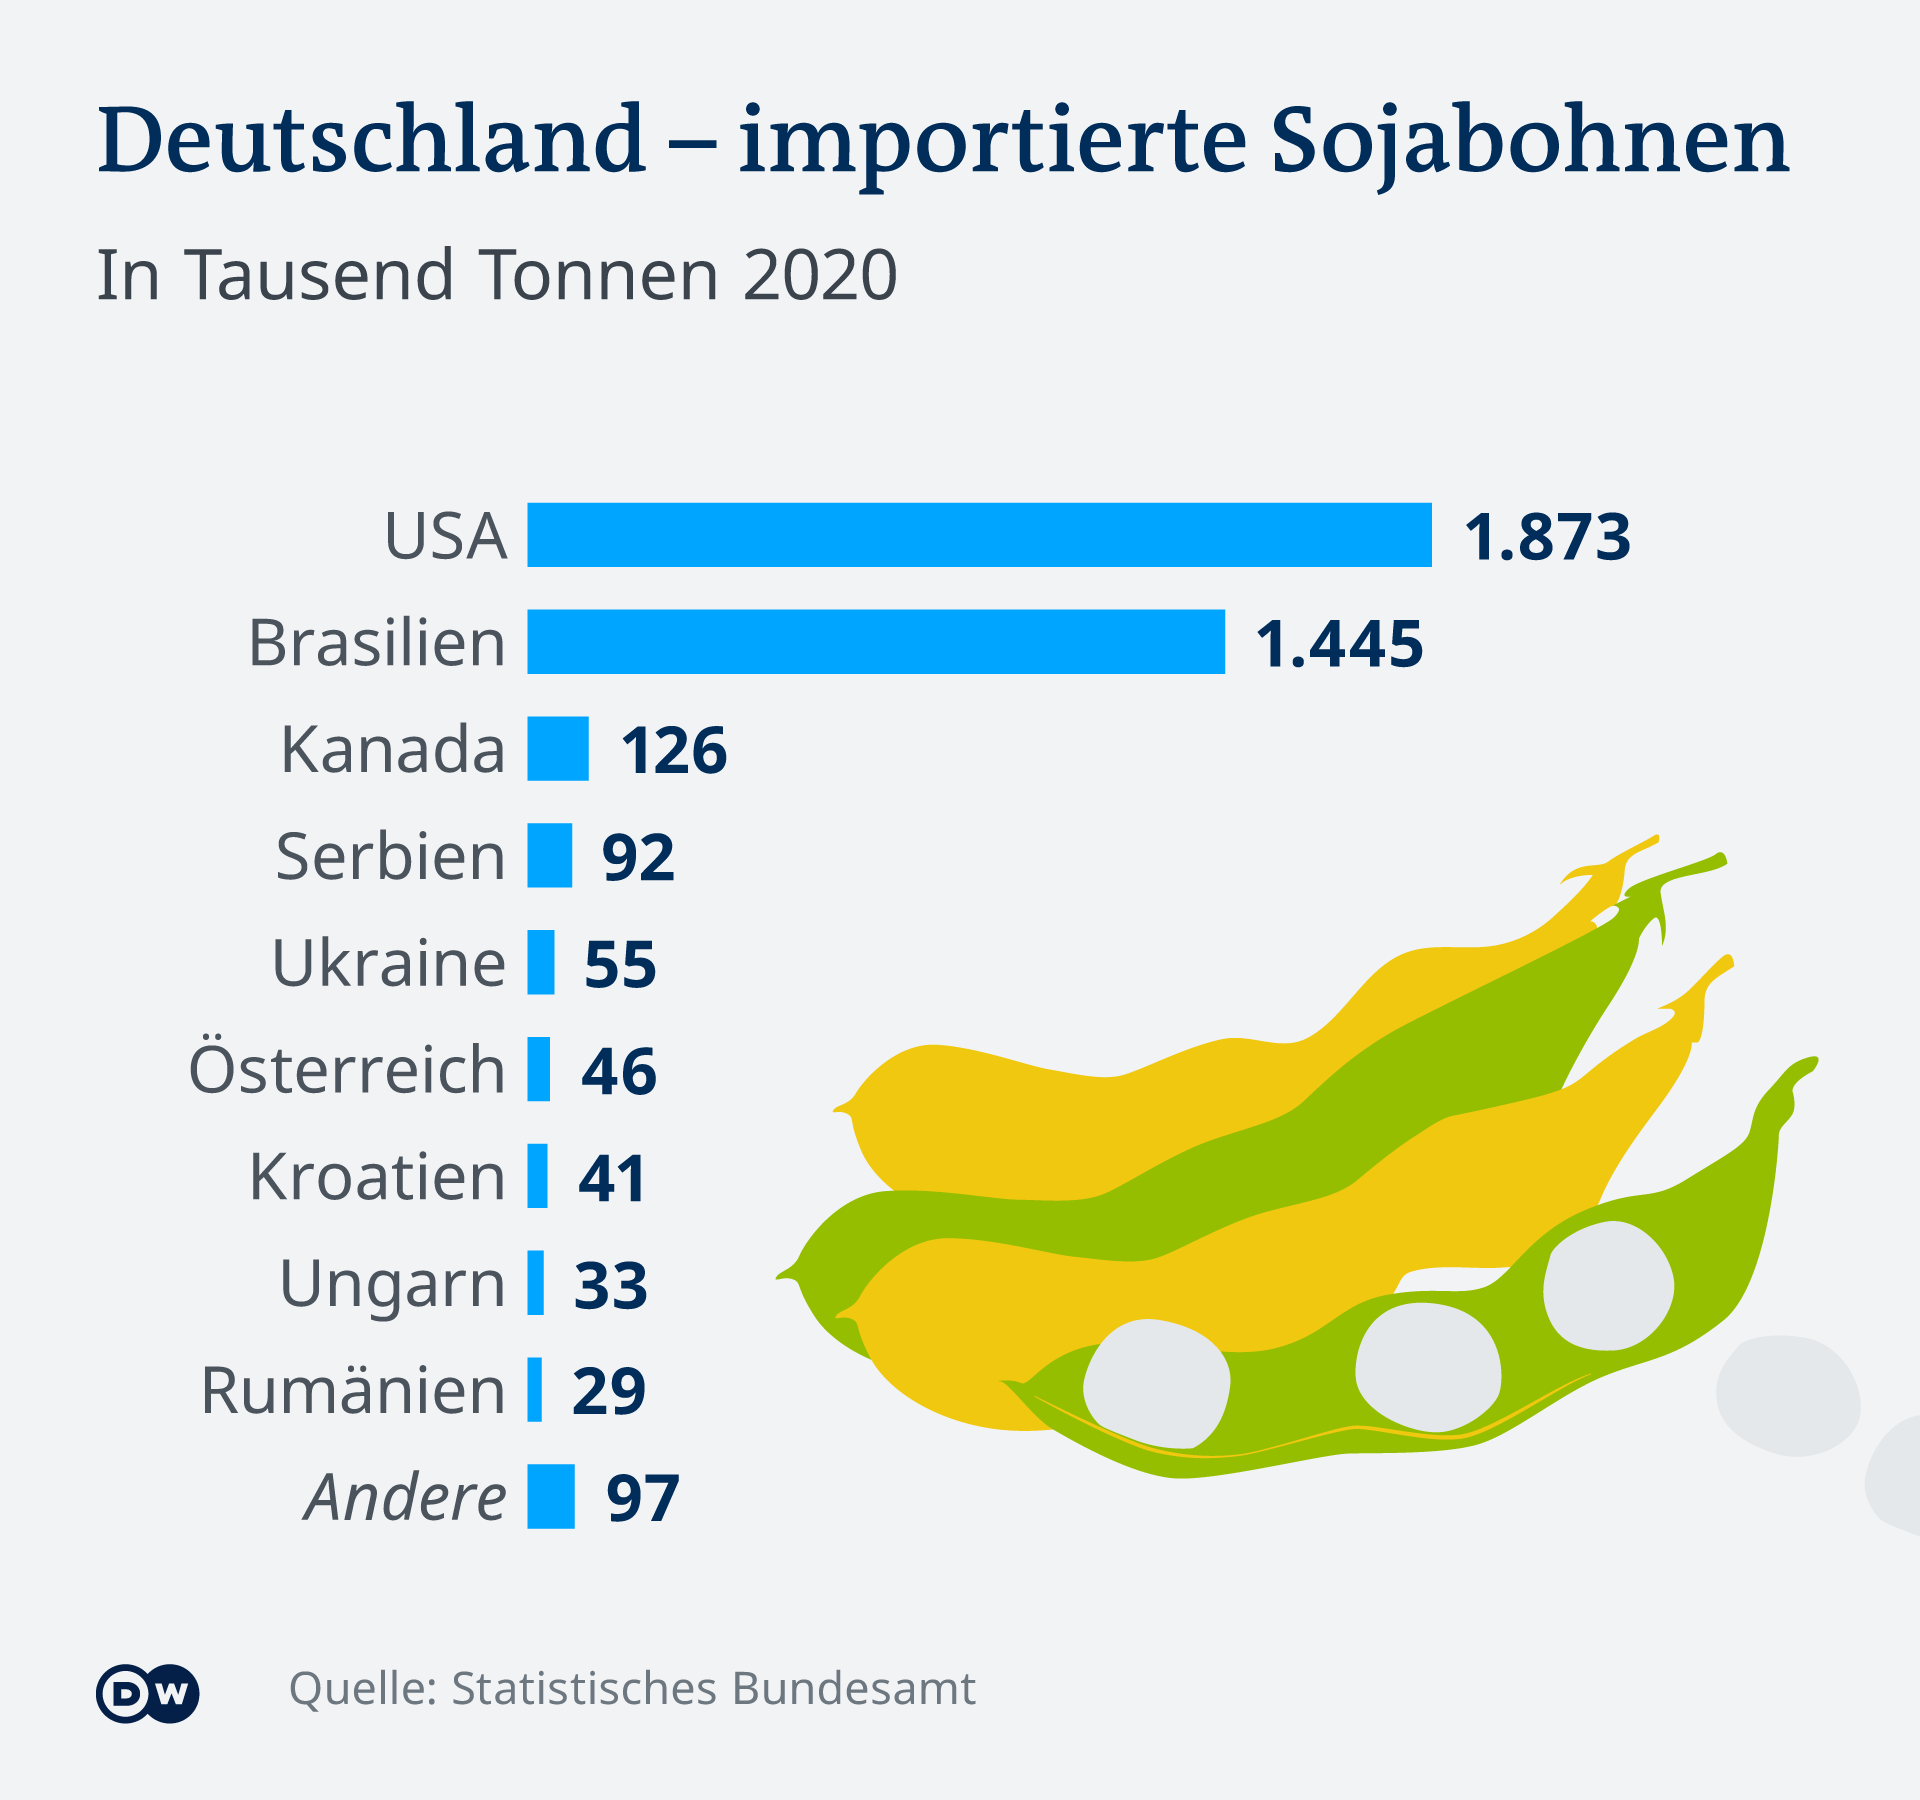 Infographie du soja importé en Allemagne DE